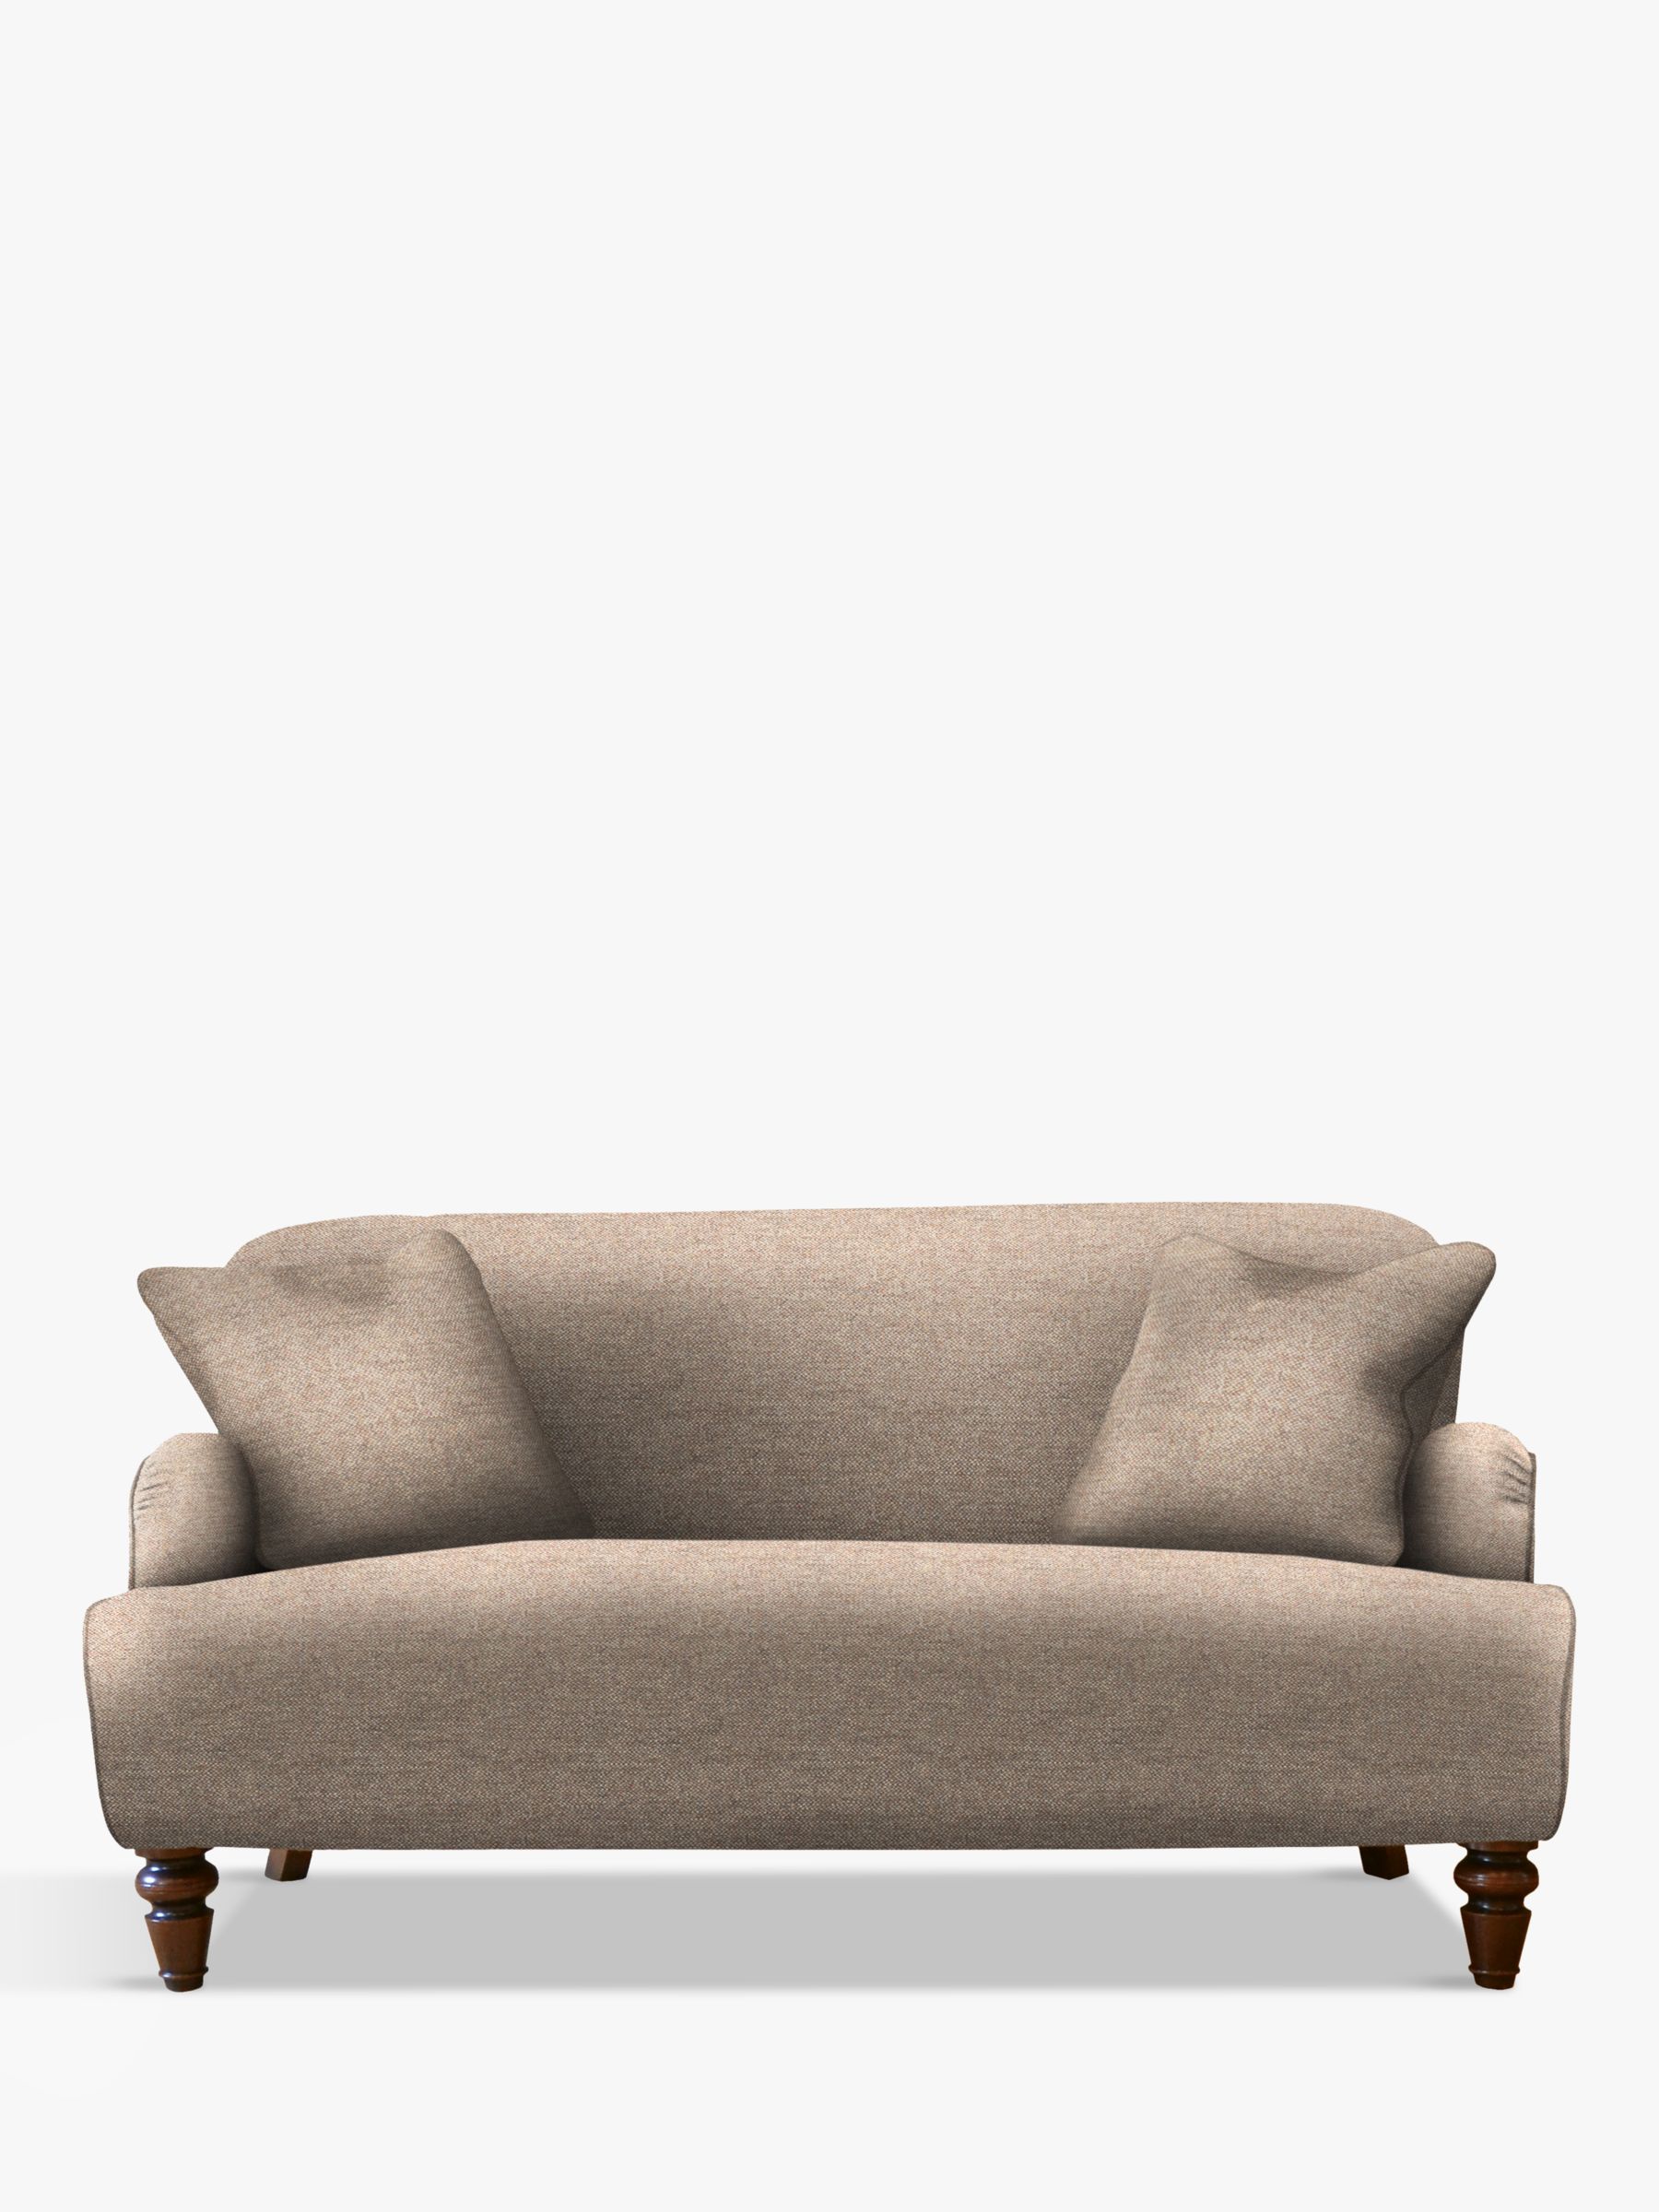 Tetrad Lewis Petite 2 Seater Sofa